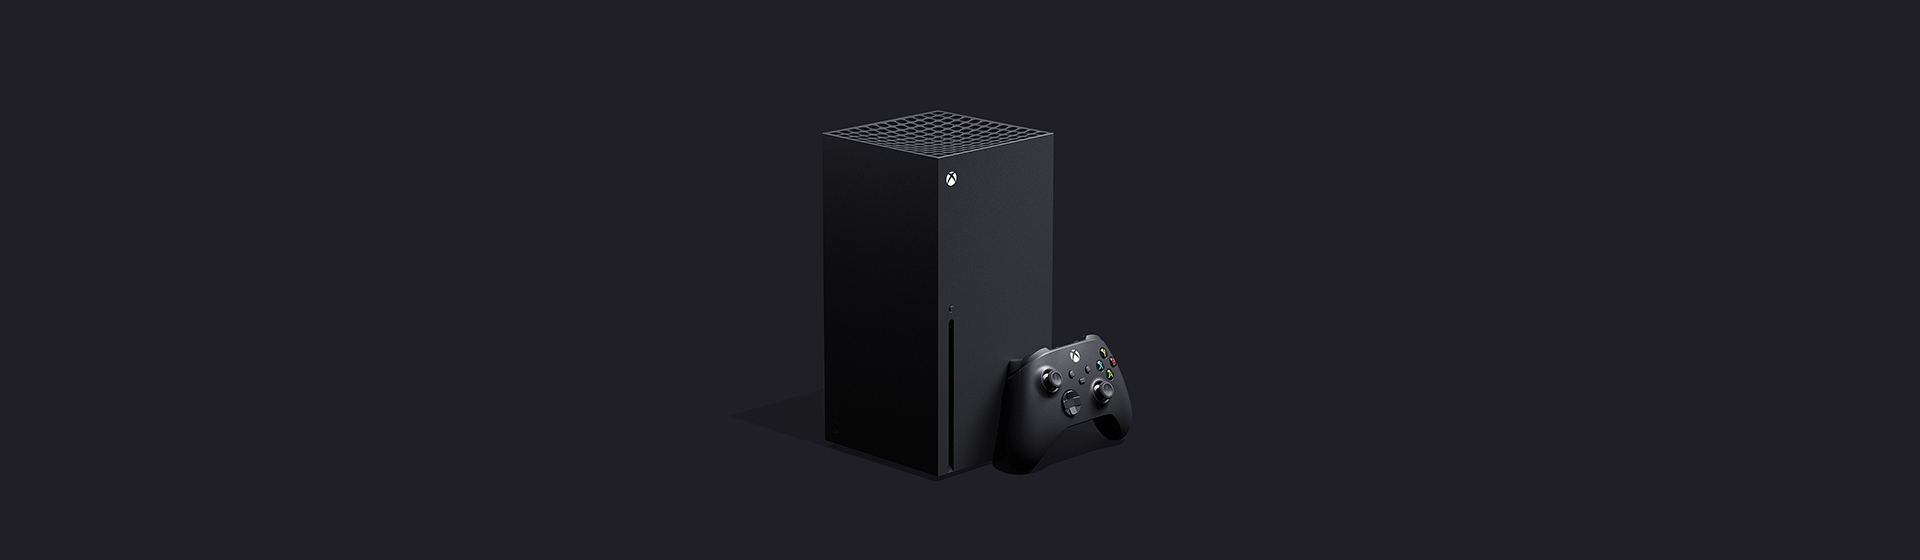 Xbox Series X được công bố, ra mắt vào cuối năm 2020